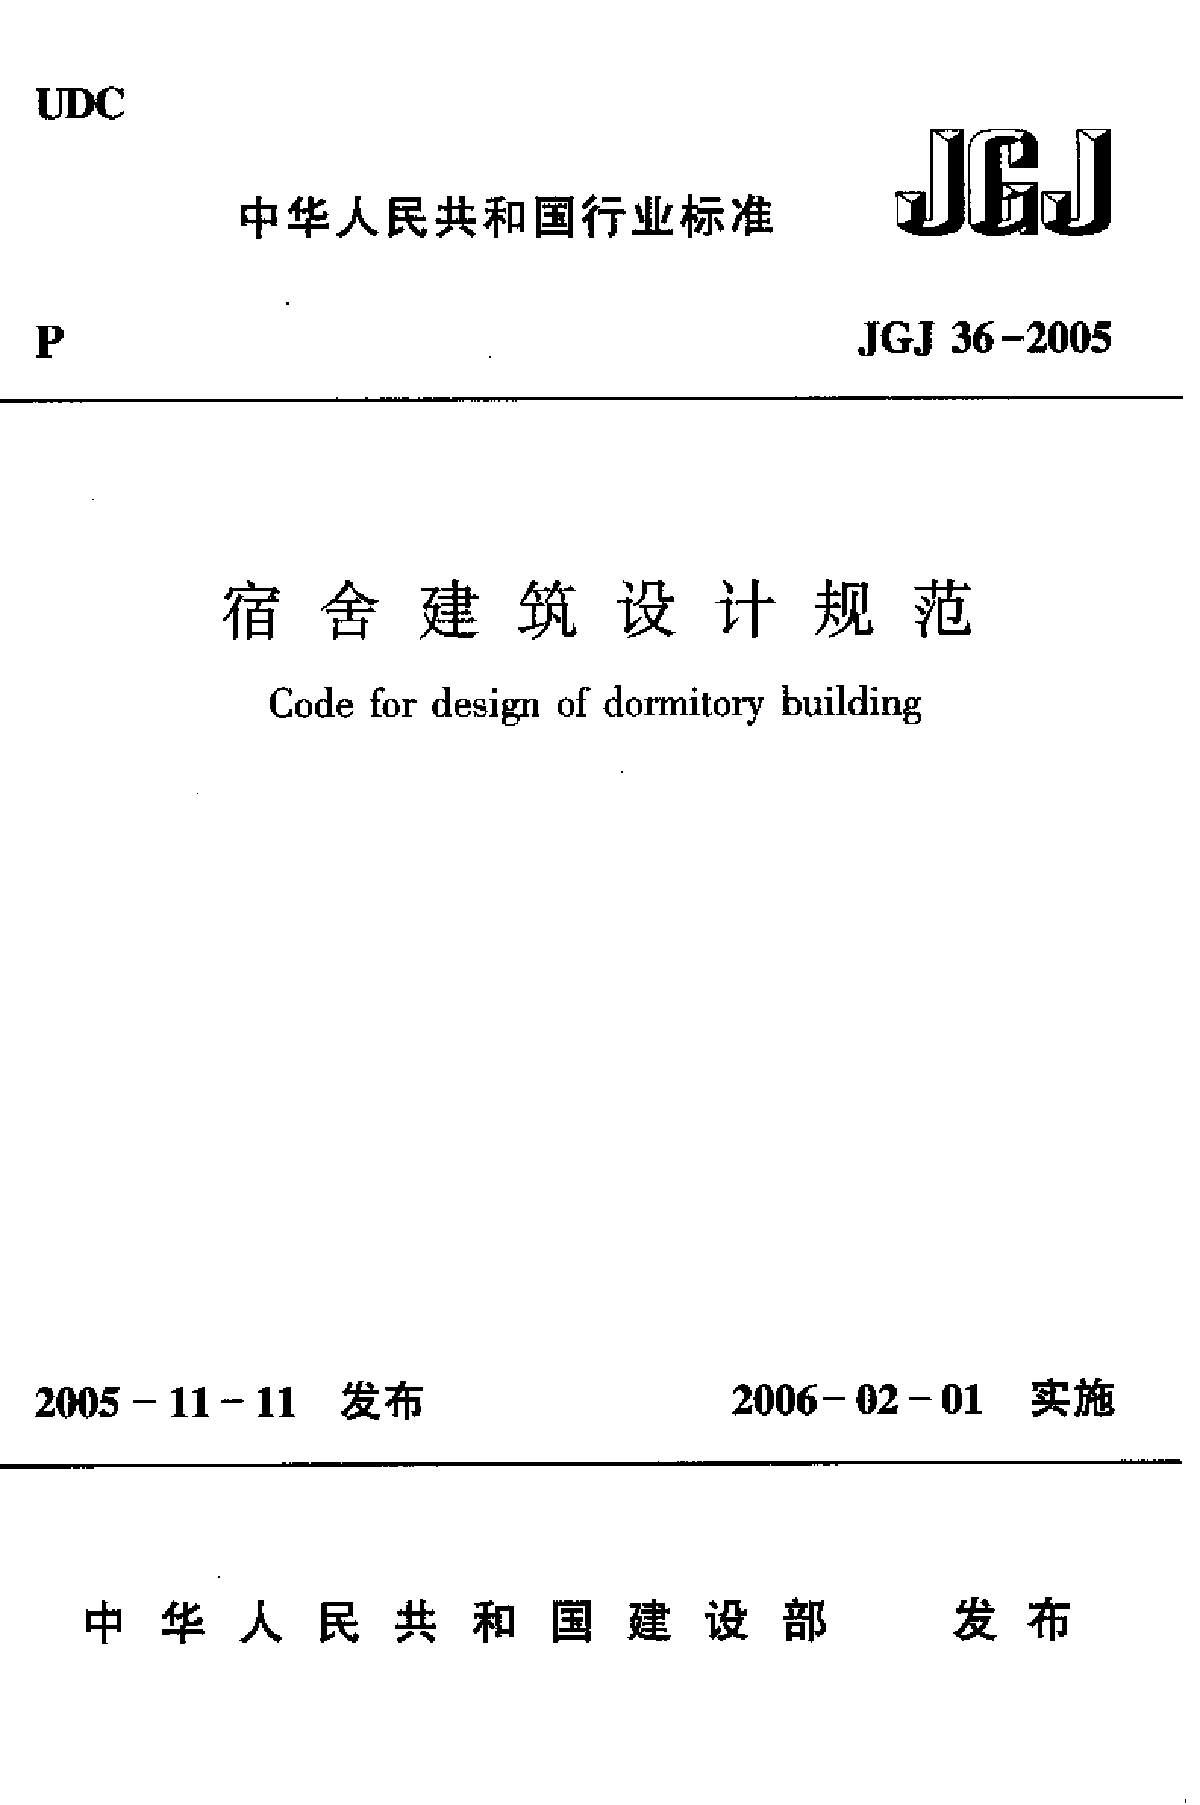 JGJ 36-2005 宿舍建筑设计规范.pdf